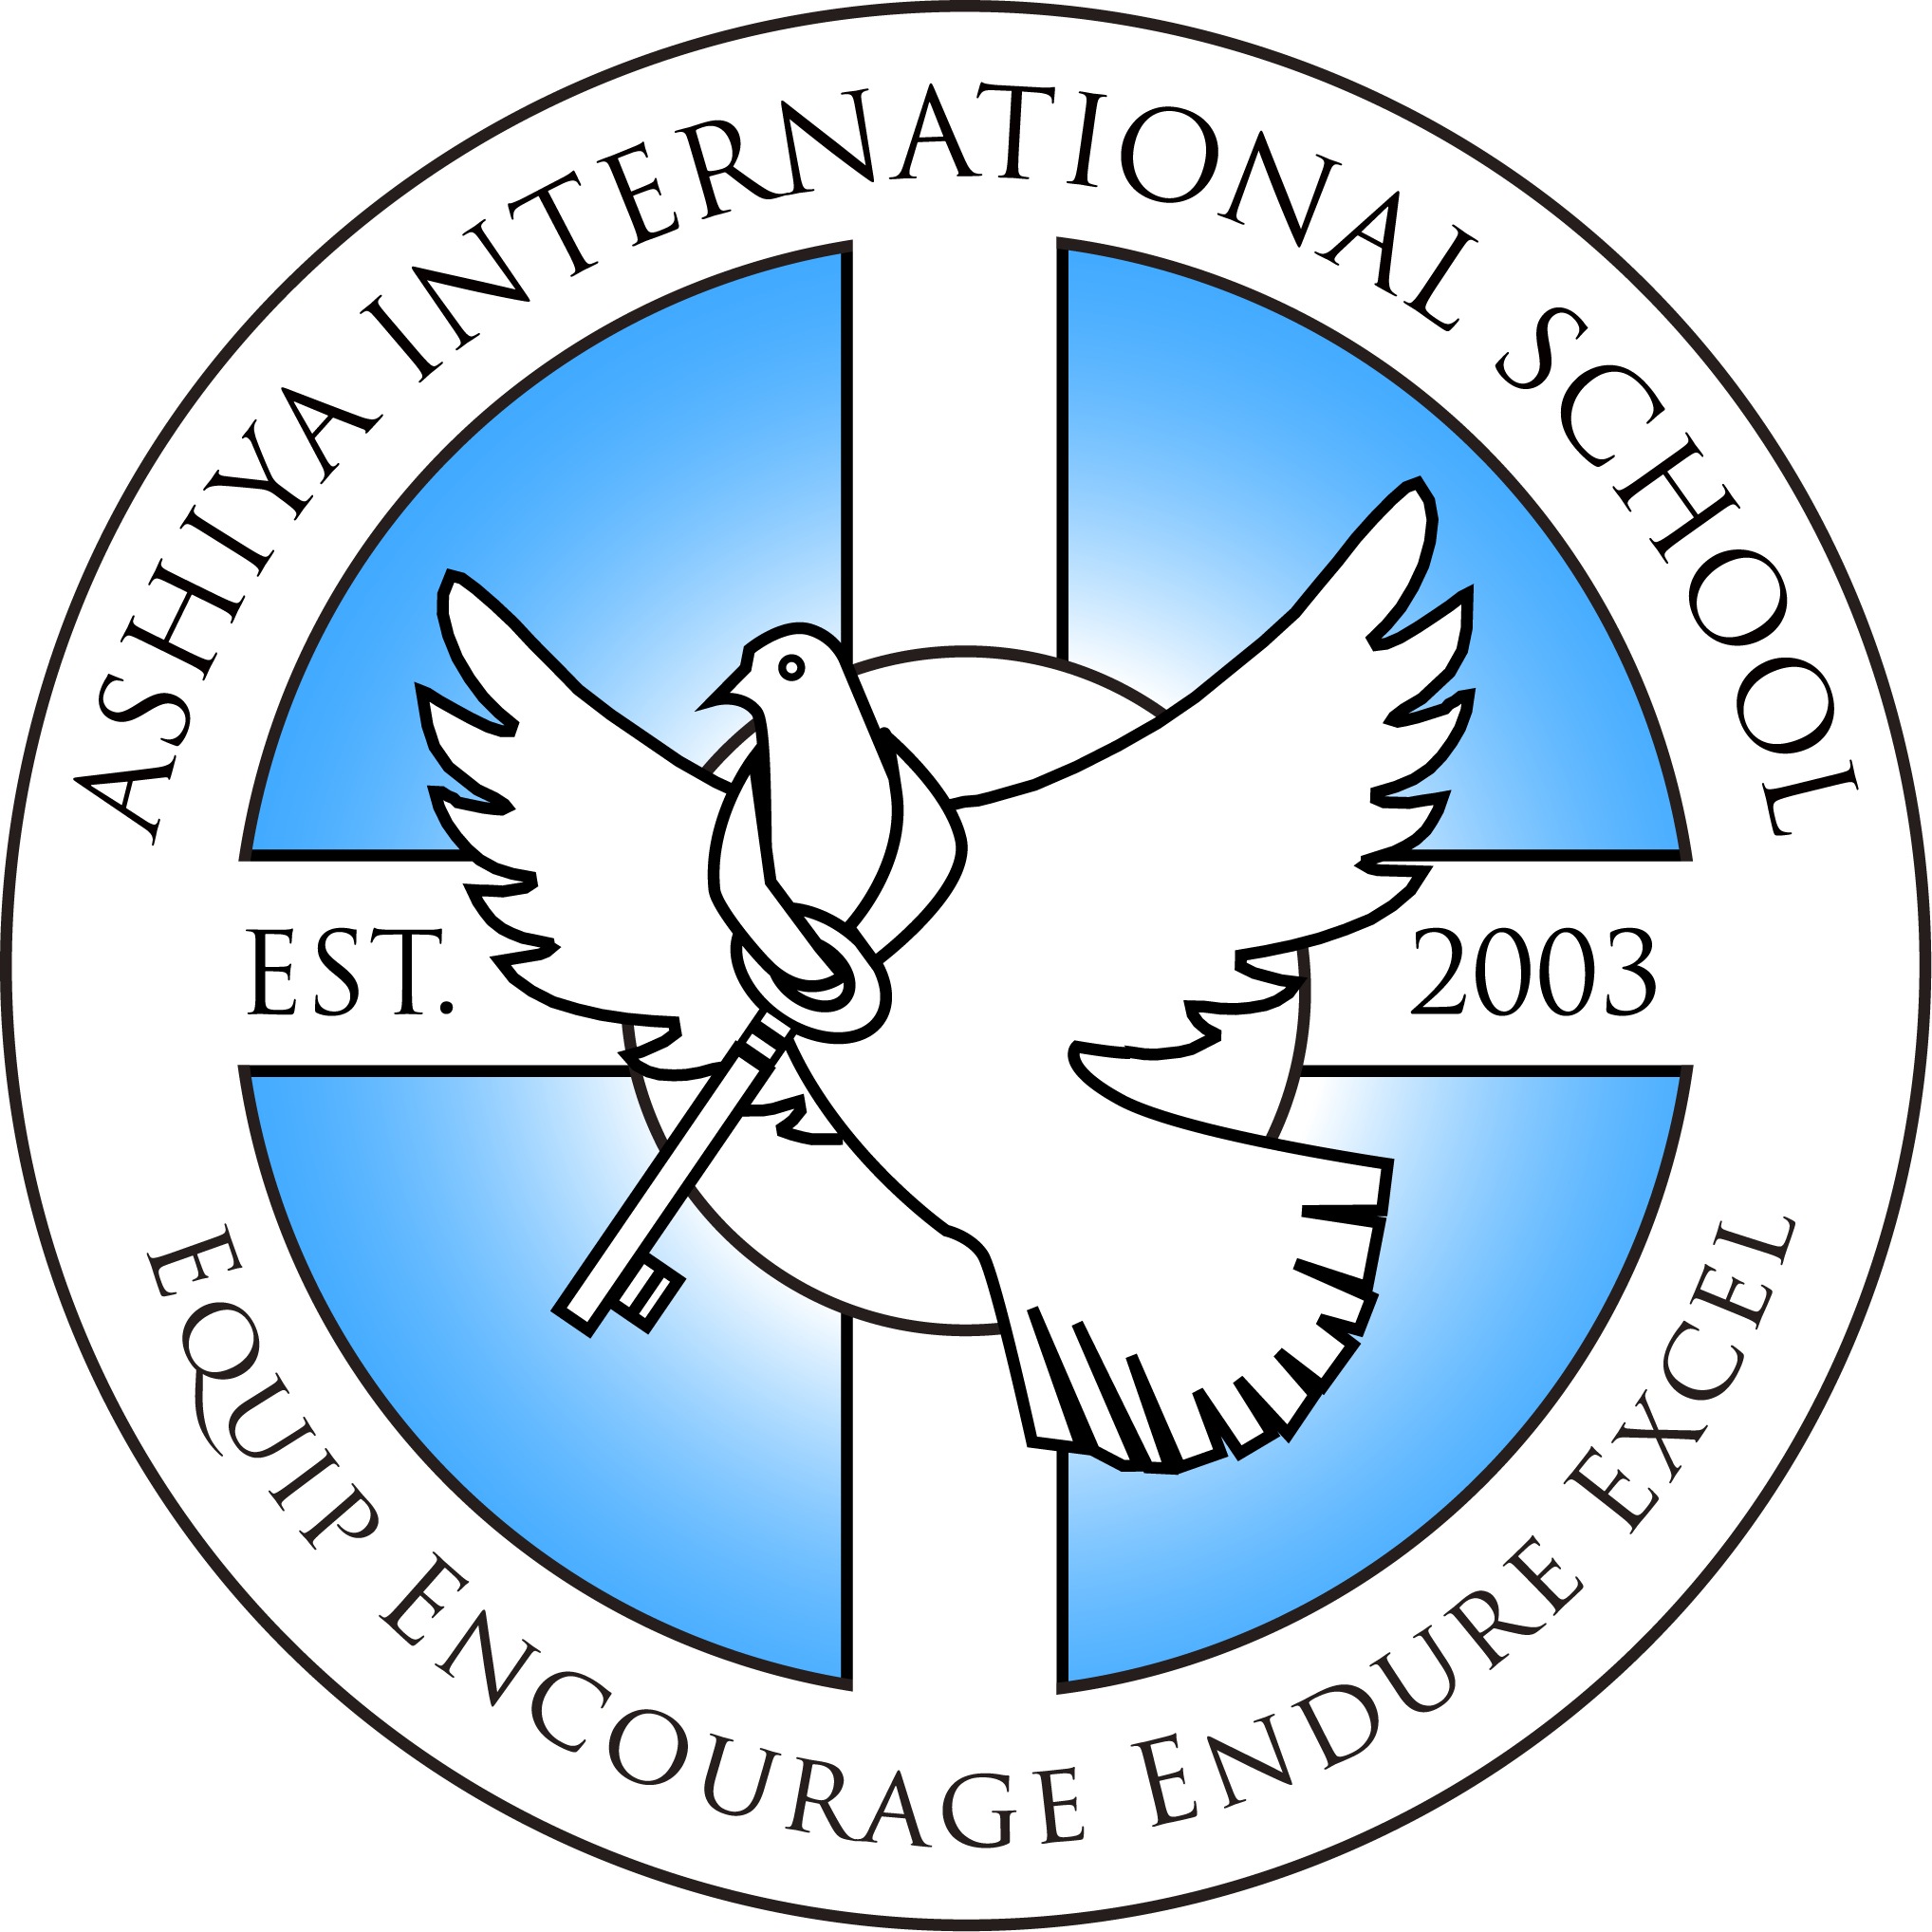 ais logo, 2003 version